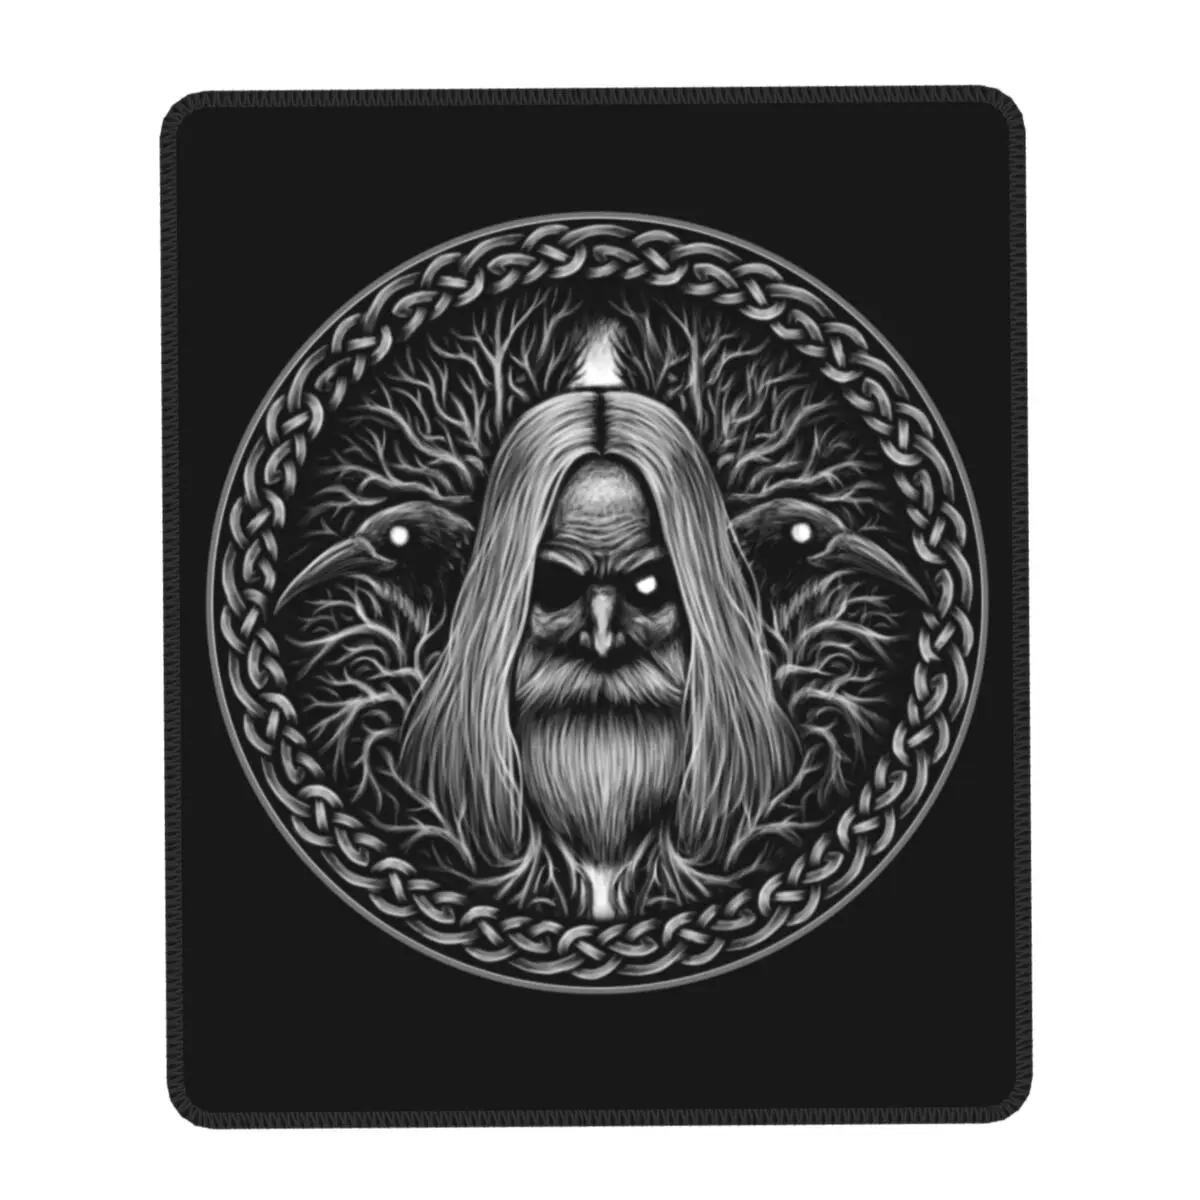 

Коврик для мыши Odin с воронами, квадратный игровой коврик для мыши, нескользящая резиновая основа, Скандинавская мифология, стиль викингов, в...